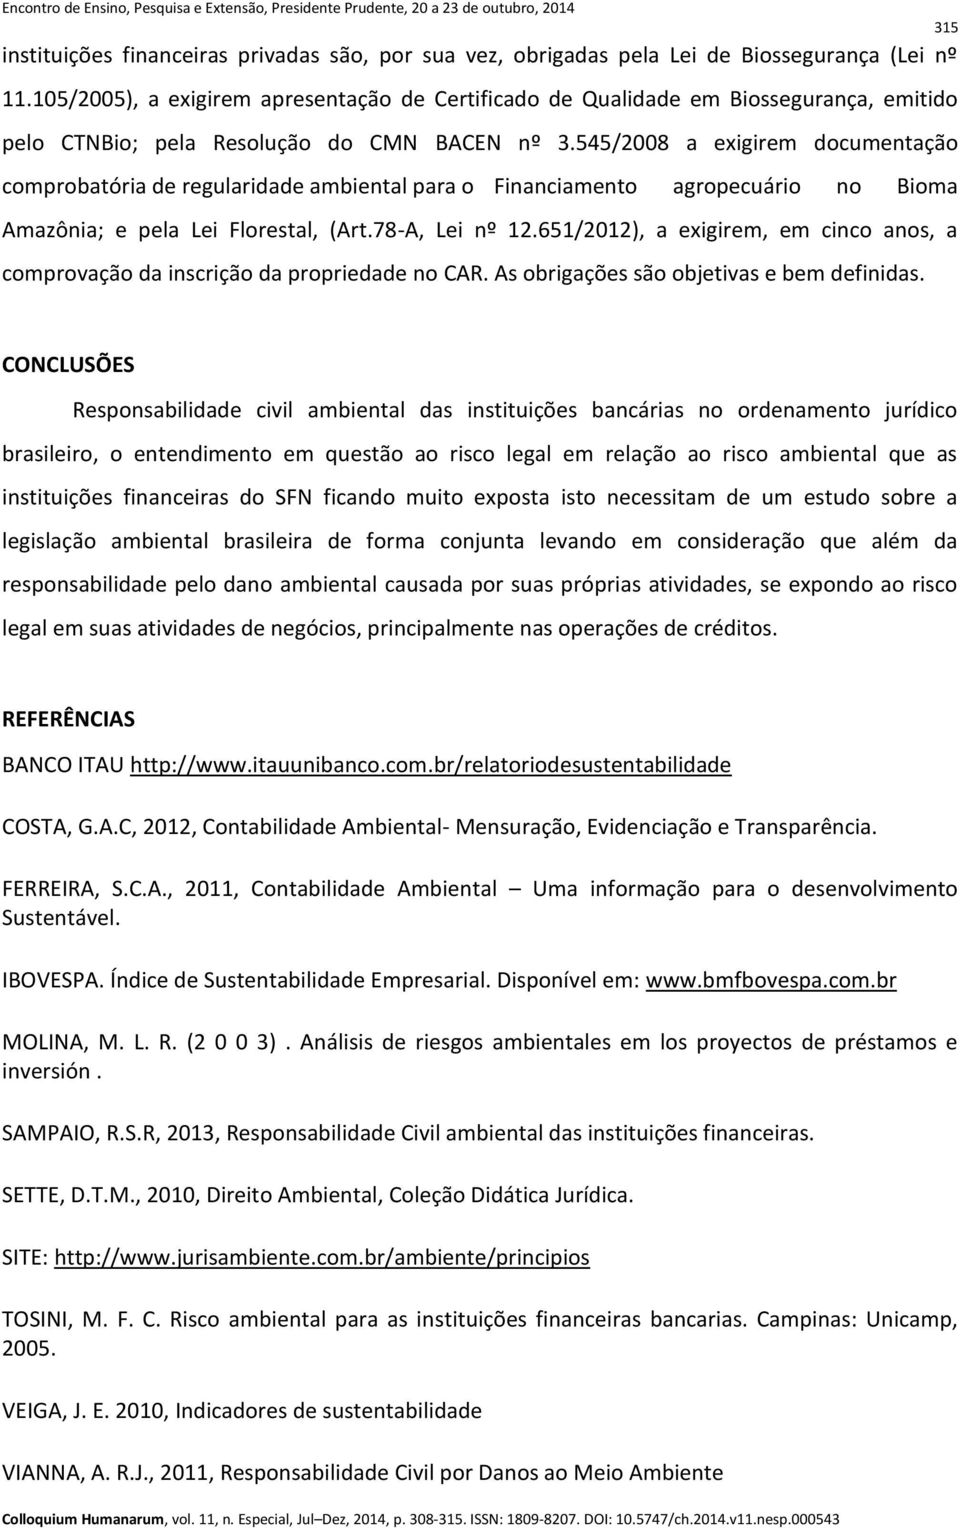 545/2008 a exigirem documentação comprobatória de regularidade ambiental para o Financiamento agropecuário no Bioma Amazônia; e pela Lei Florestal, (Art.78-A, Lei nº 12.